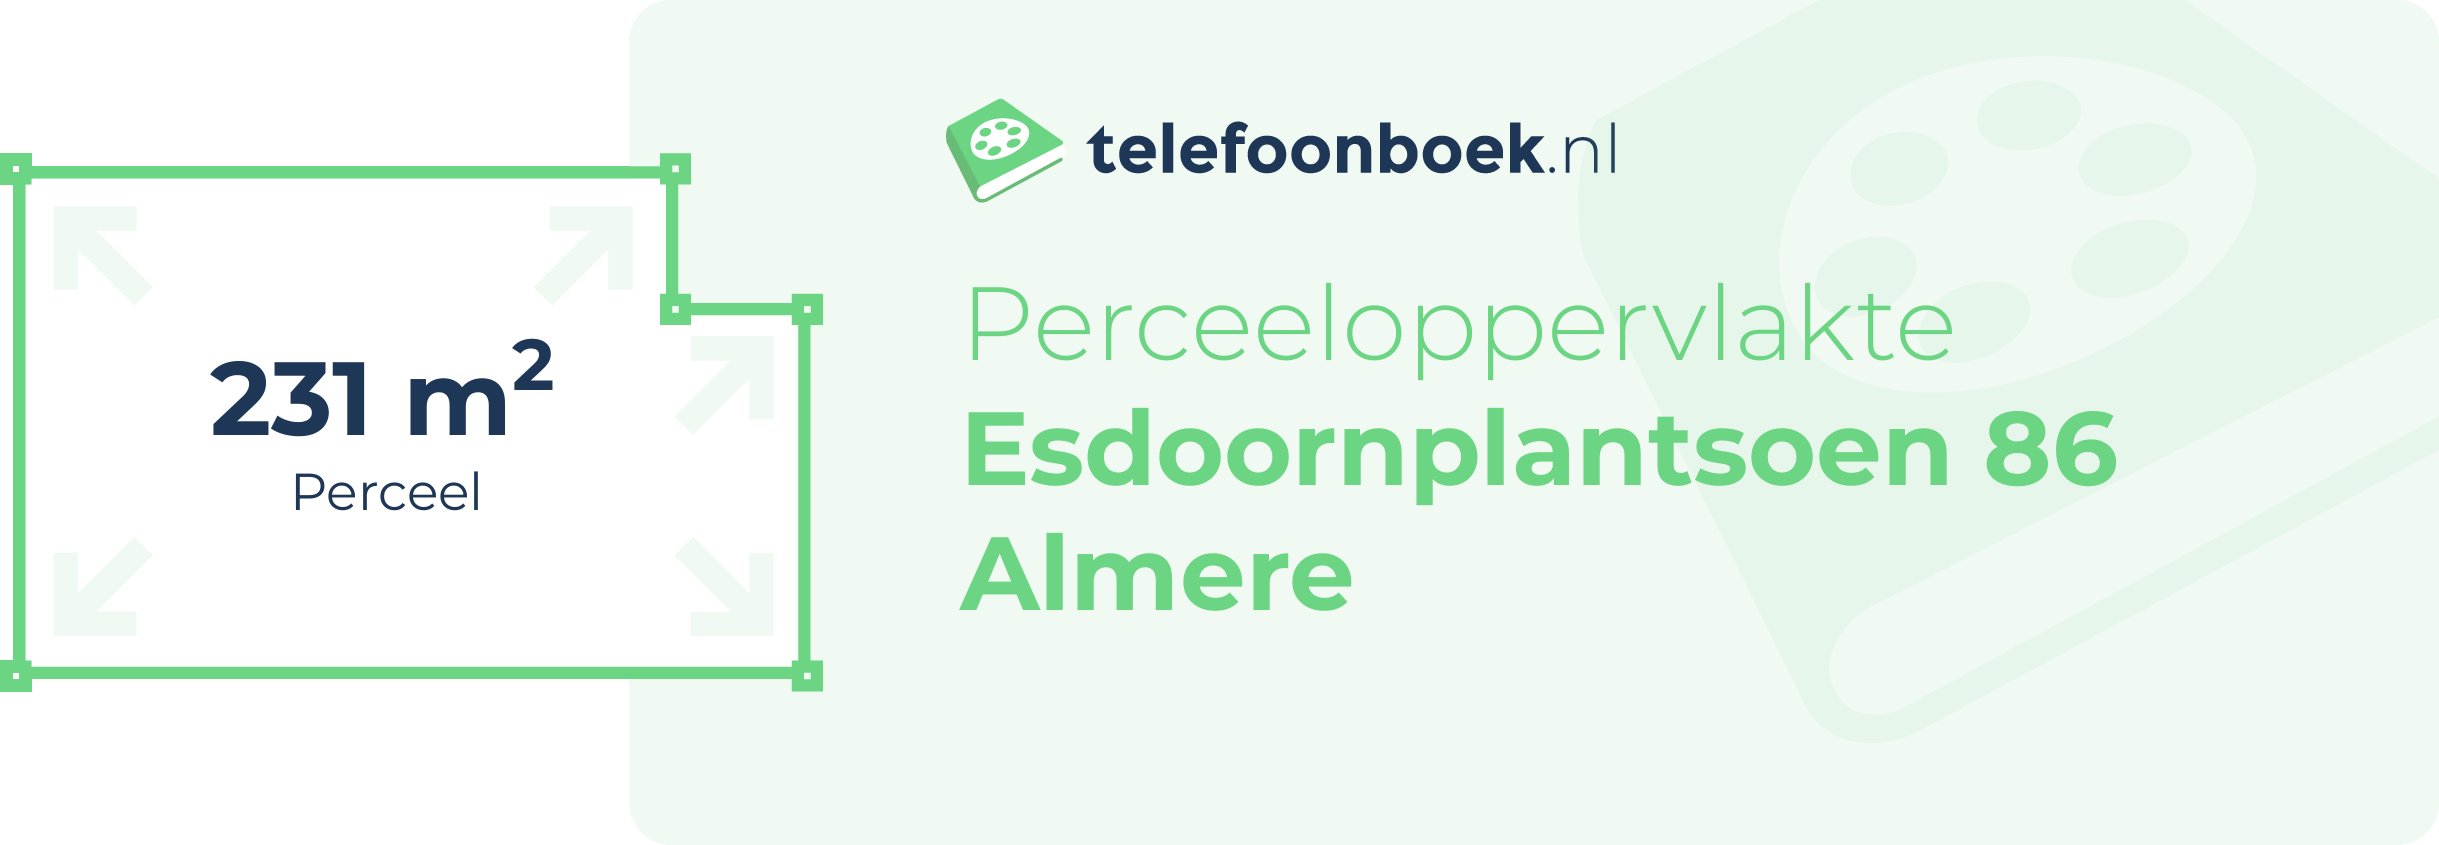 Perceeloppervlakte Esdoornplantsoen 86 Almere